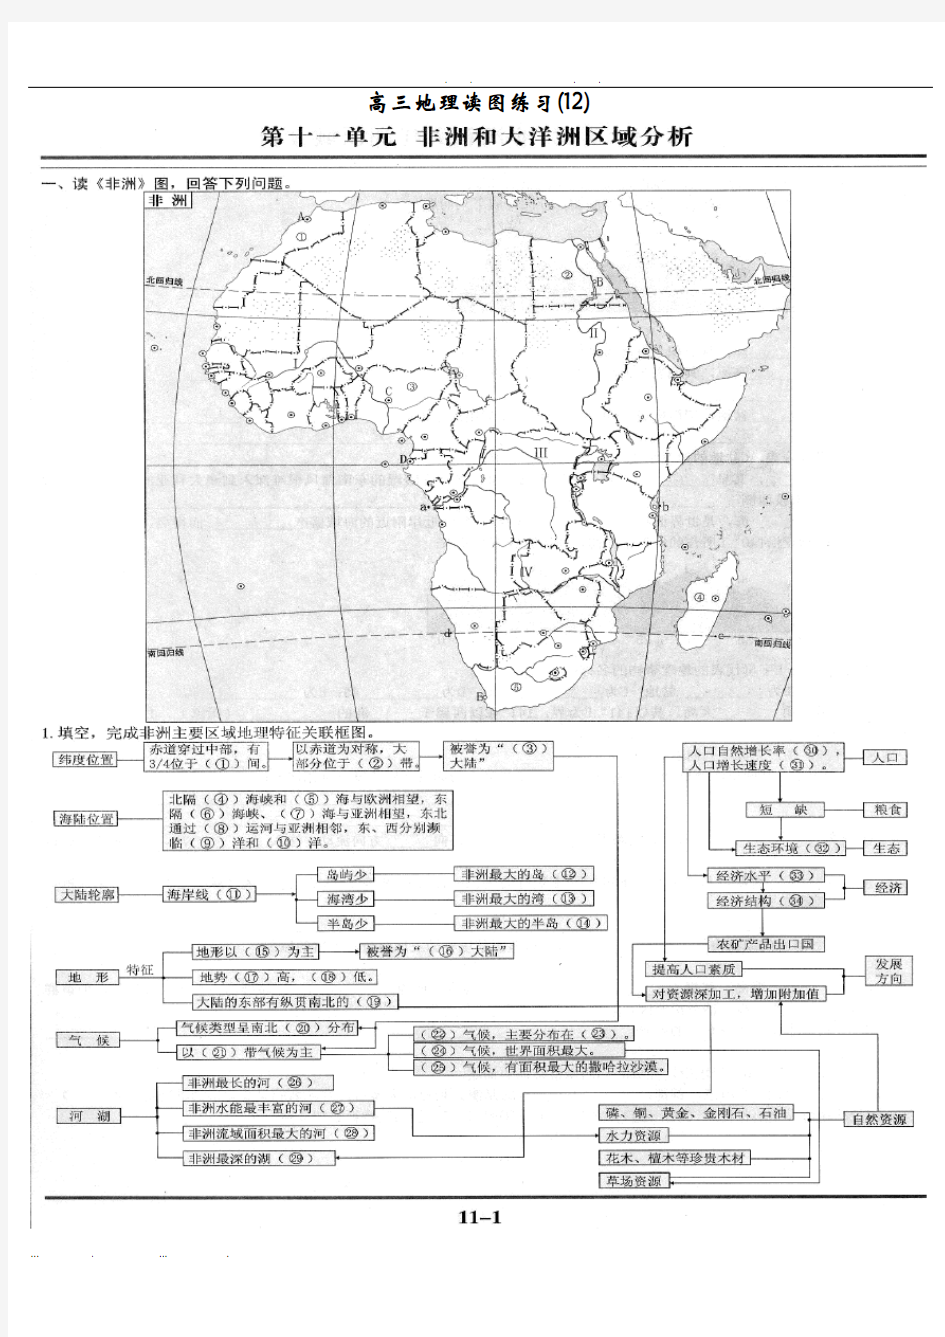 地理读图练习(12)--非洲和大洋洲区域分析报告